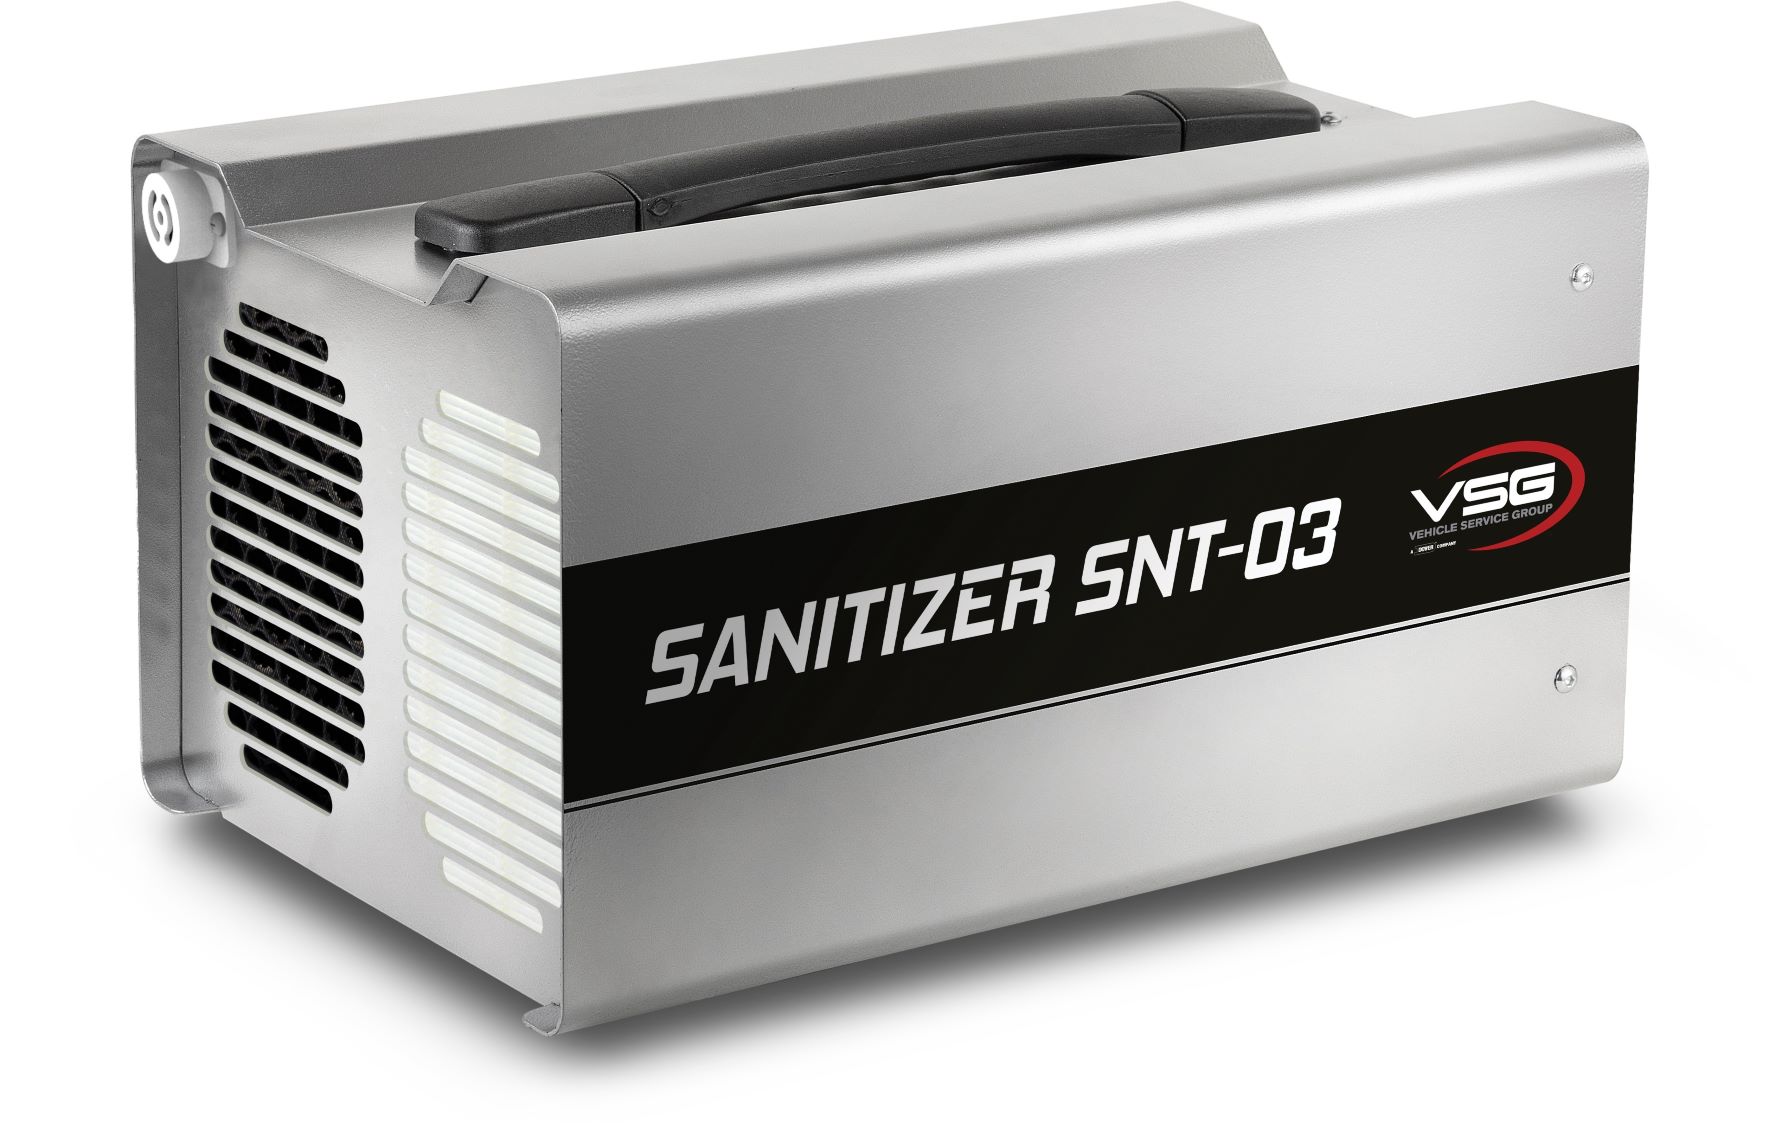 Desinfektionsgerät für Fahrzeuge und Betriebsstätten. Der Sanitizer SNT-O3 arbeitet auf dem Ozon Sättigungsniveau. Geprüft gegen Bakterien und Viren - auch Covid-19. Auch geeignet zur Geruchsneutralisierung.